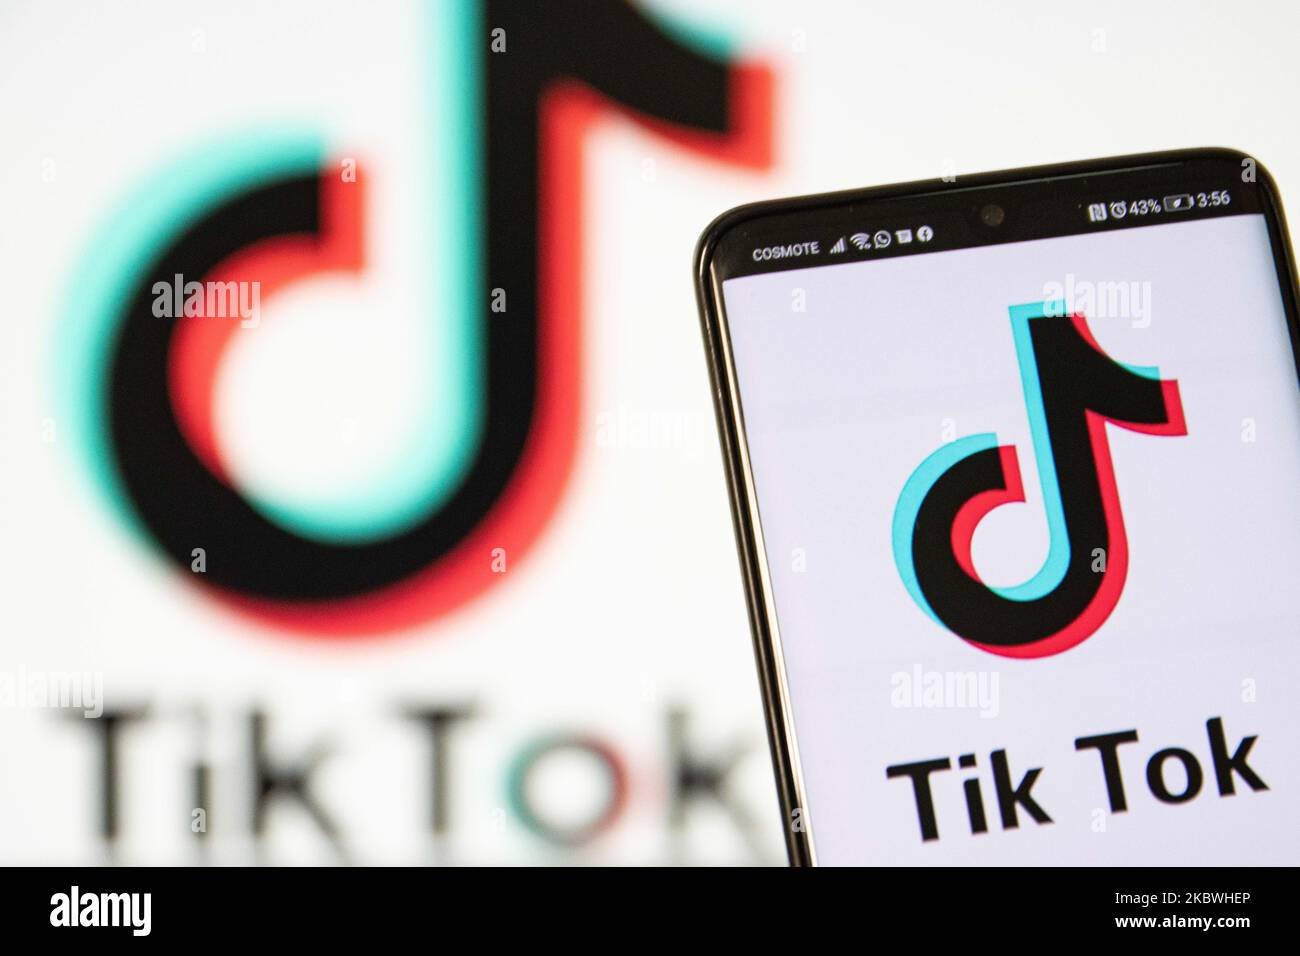 Das TikTok-Nahaufnahme-Logo, das auf einem Telefonbildschirm, auf einem Smartphone und einer Tastatur angezeigt wird, ist in dieser Abbildung mit mehreren Belichtungen zu sehen. TIK Tok ist ein chinesischer Social-Networking-Service, der sich im Besitz des in Peking ansässigen Internet-Technologie-Unternehmens Bytedance befindet. Es wird verwendet, um kurze Tanz-, Lip-Sync-, Comedy- und Talentvideos zu erstellen. Bytedance startete die TikTok App für iOS und Android im Jahr 2017 und Anfang September 2016 Douyin auf dem Markt in China. Im Oktober 2018 wurde TikTok zur am häufigsten heruntergeladenen App in den USA. Präsident der USA Donald Trump droht und plant, das beliebte Video-Sharing zu verbieten Stockfoto